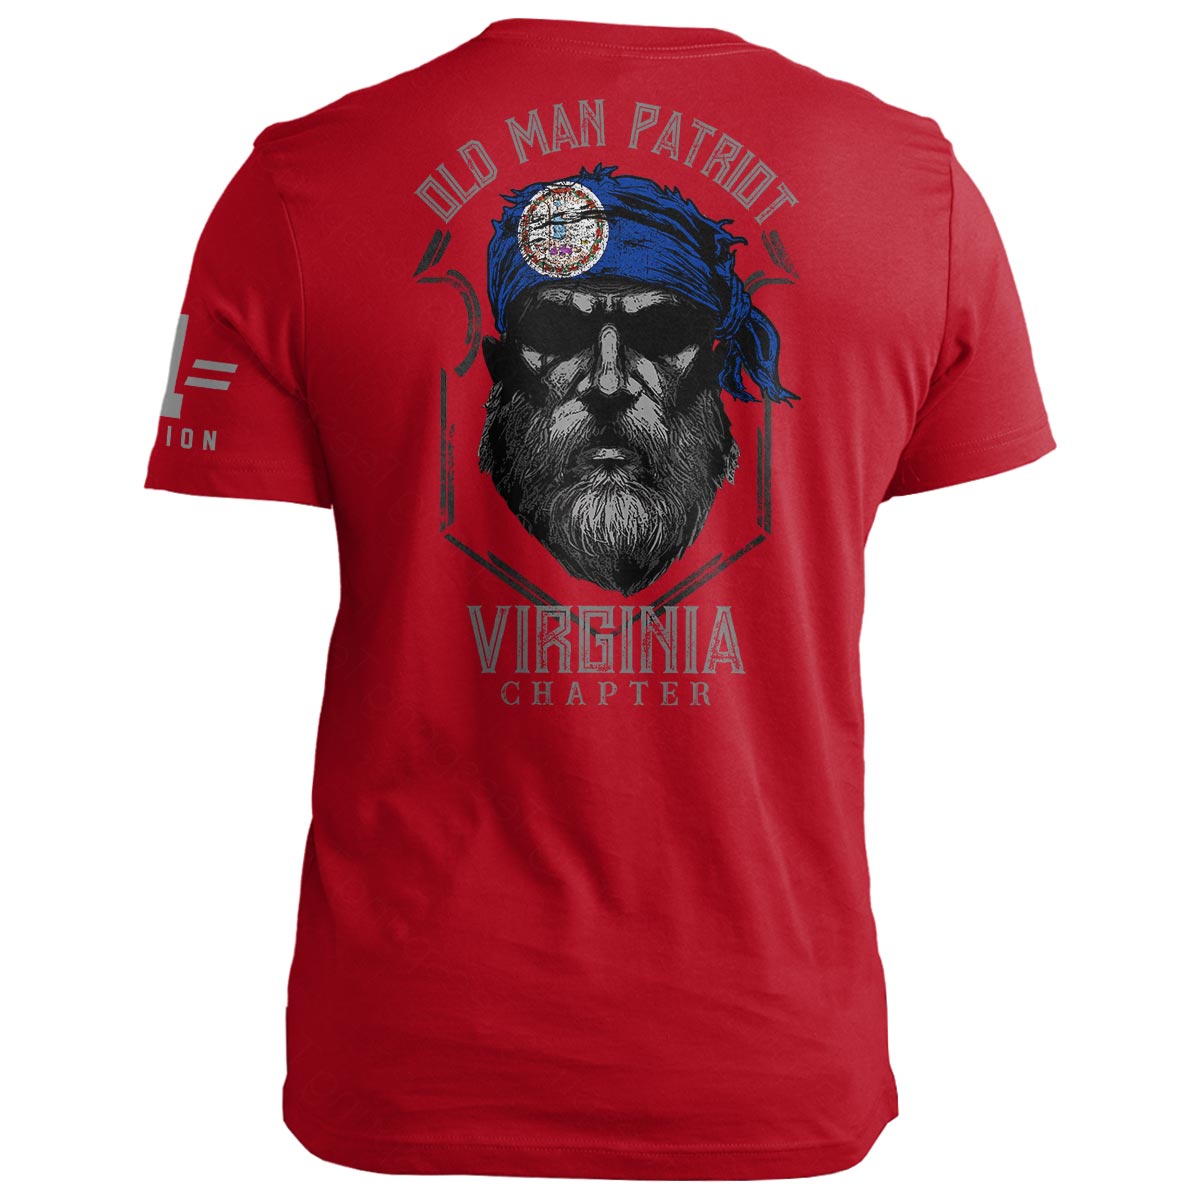 Virginia Old Man Patriot